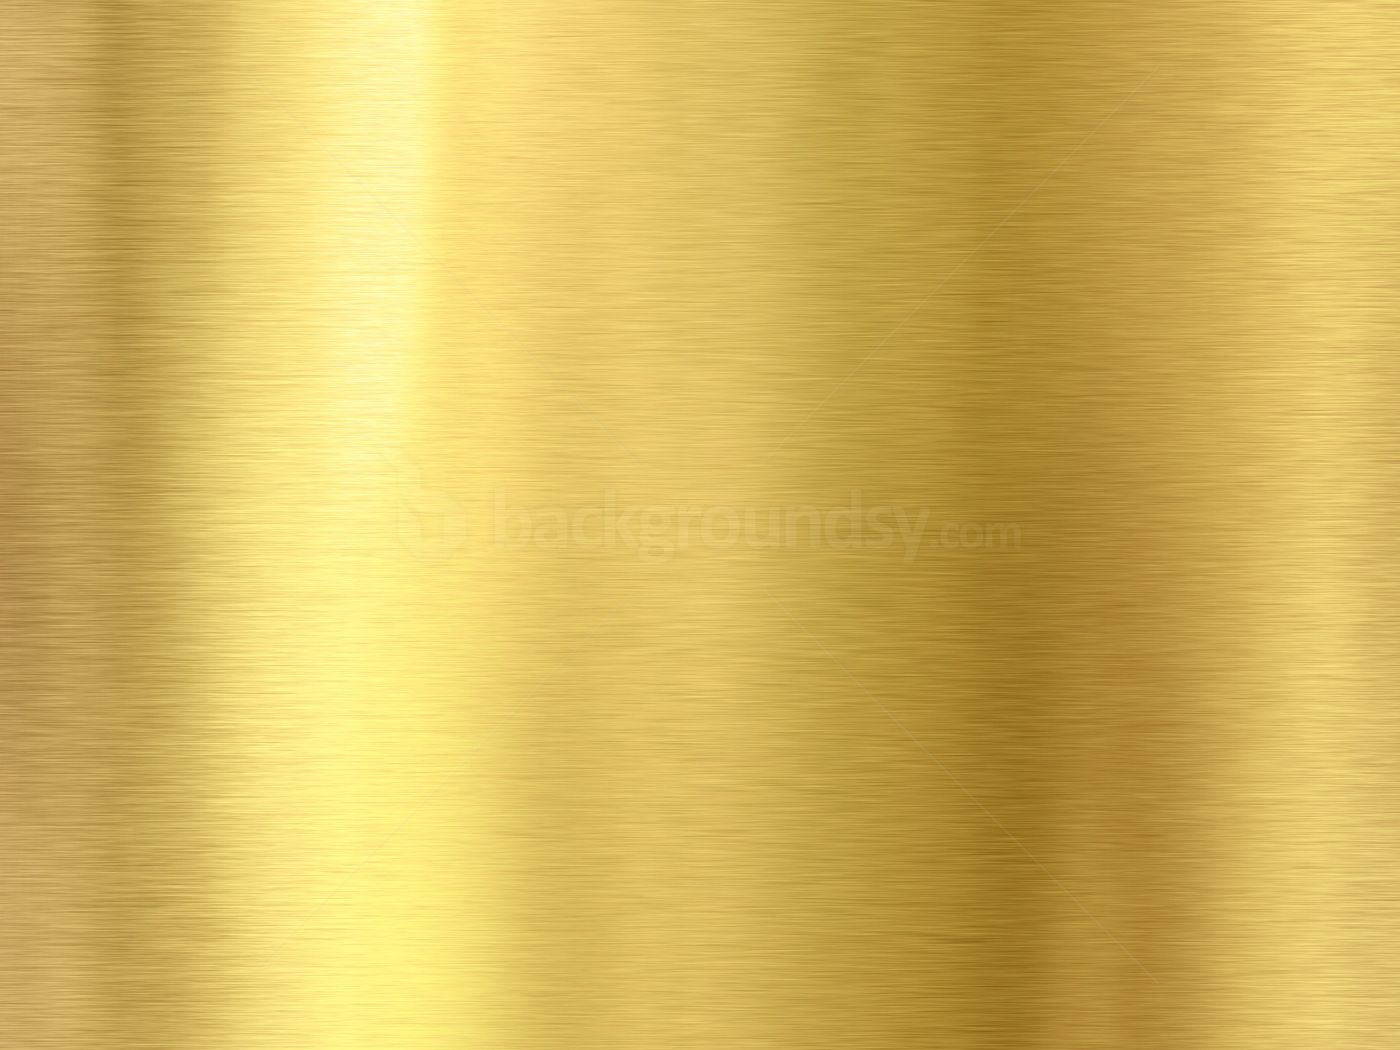 Gold Foil Background Photohop. Gold